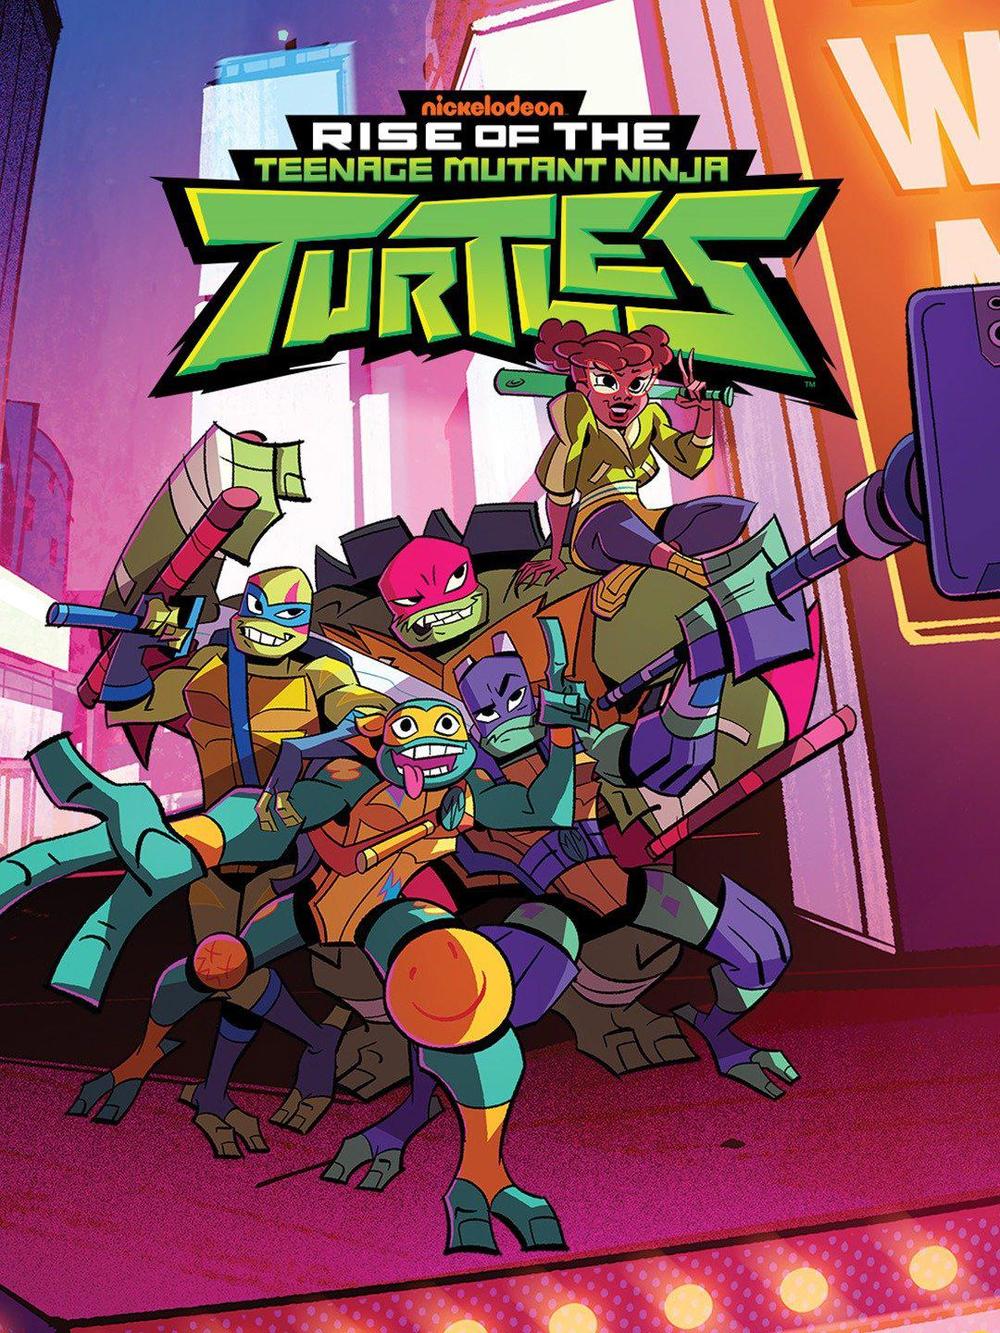 忍者神龟：崛起  Rise of the Teenage Mutant Ninja Turtles